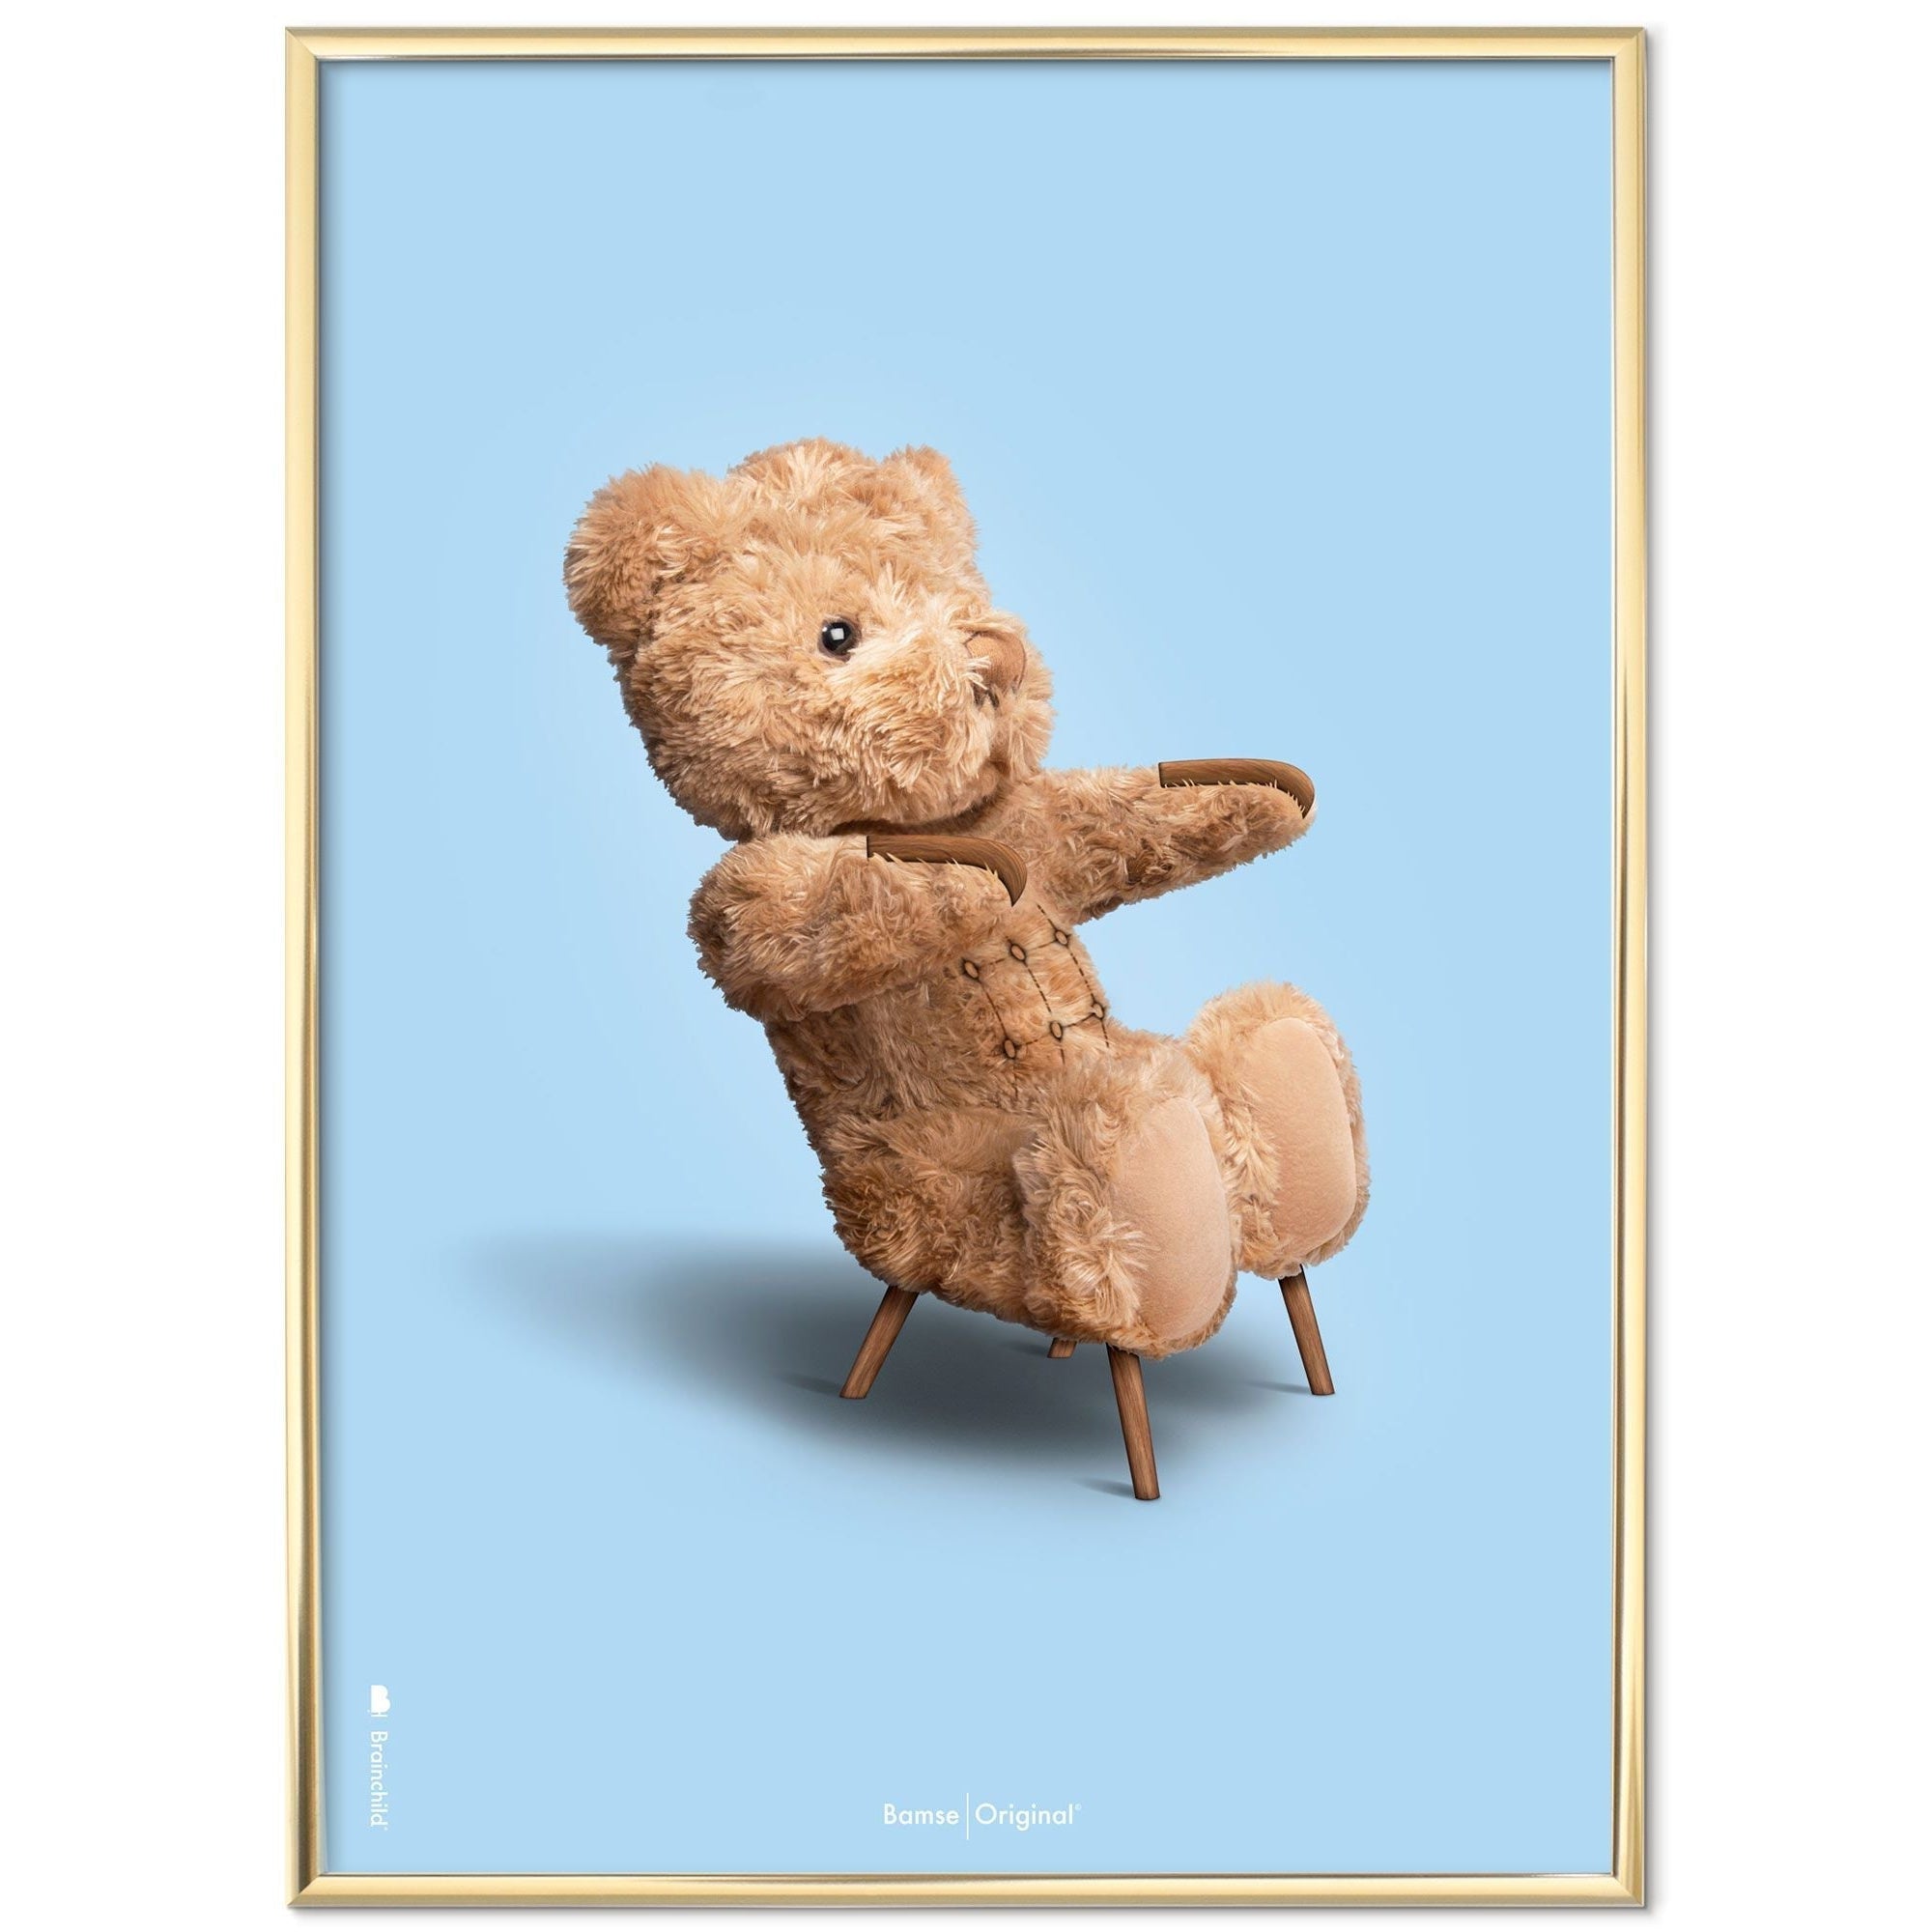 Brainchild Teddy Bear Classic plakát mosazný barevný rám 70x100 cm, světle modré pozadí